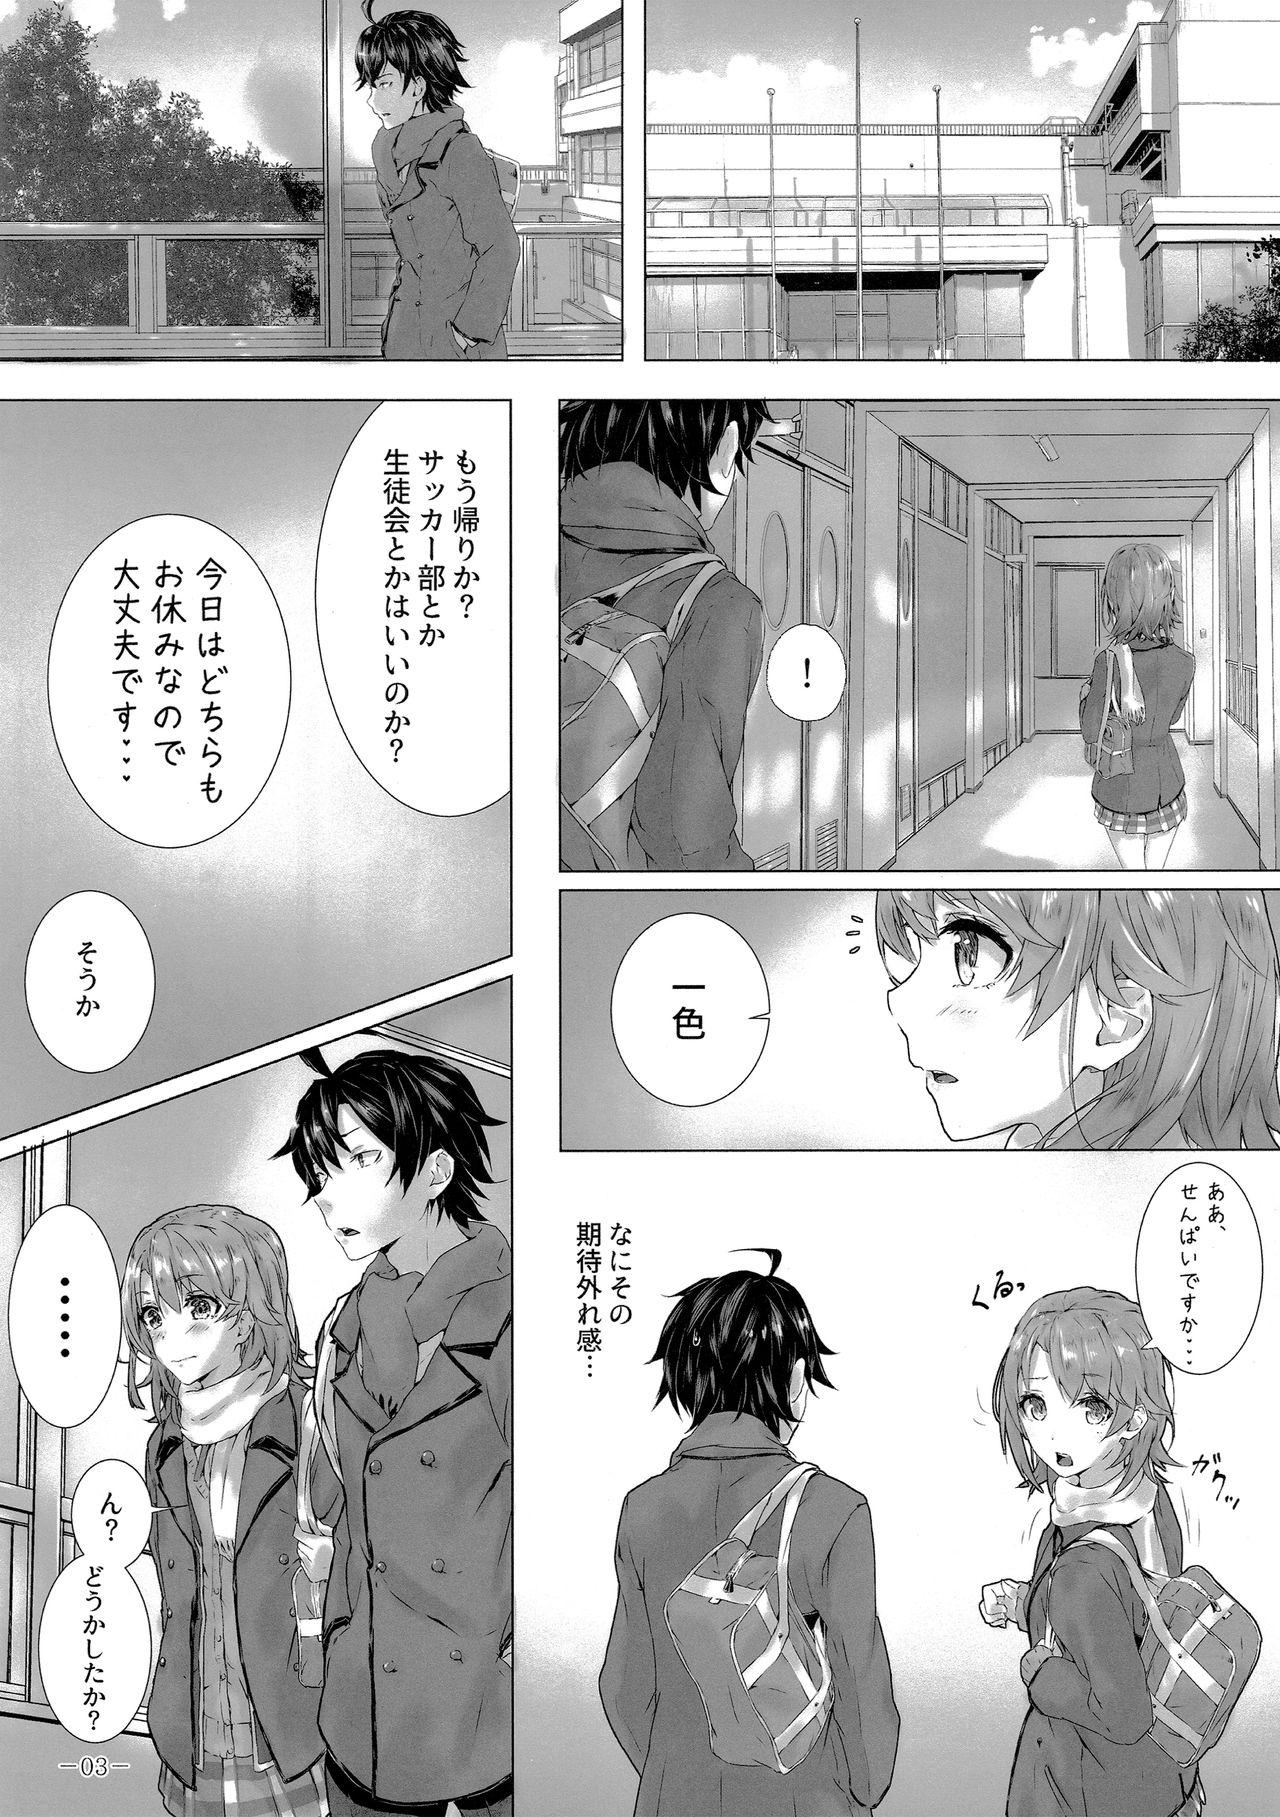 Whipping Kitto, Isshiki Iroha wa… - Yahari ore no seishun love come wa machigatteiru Ladyboy - Page 4